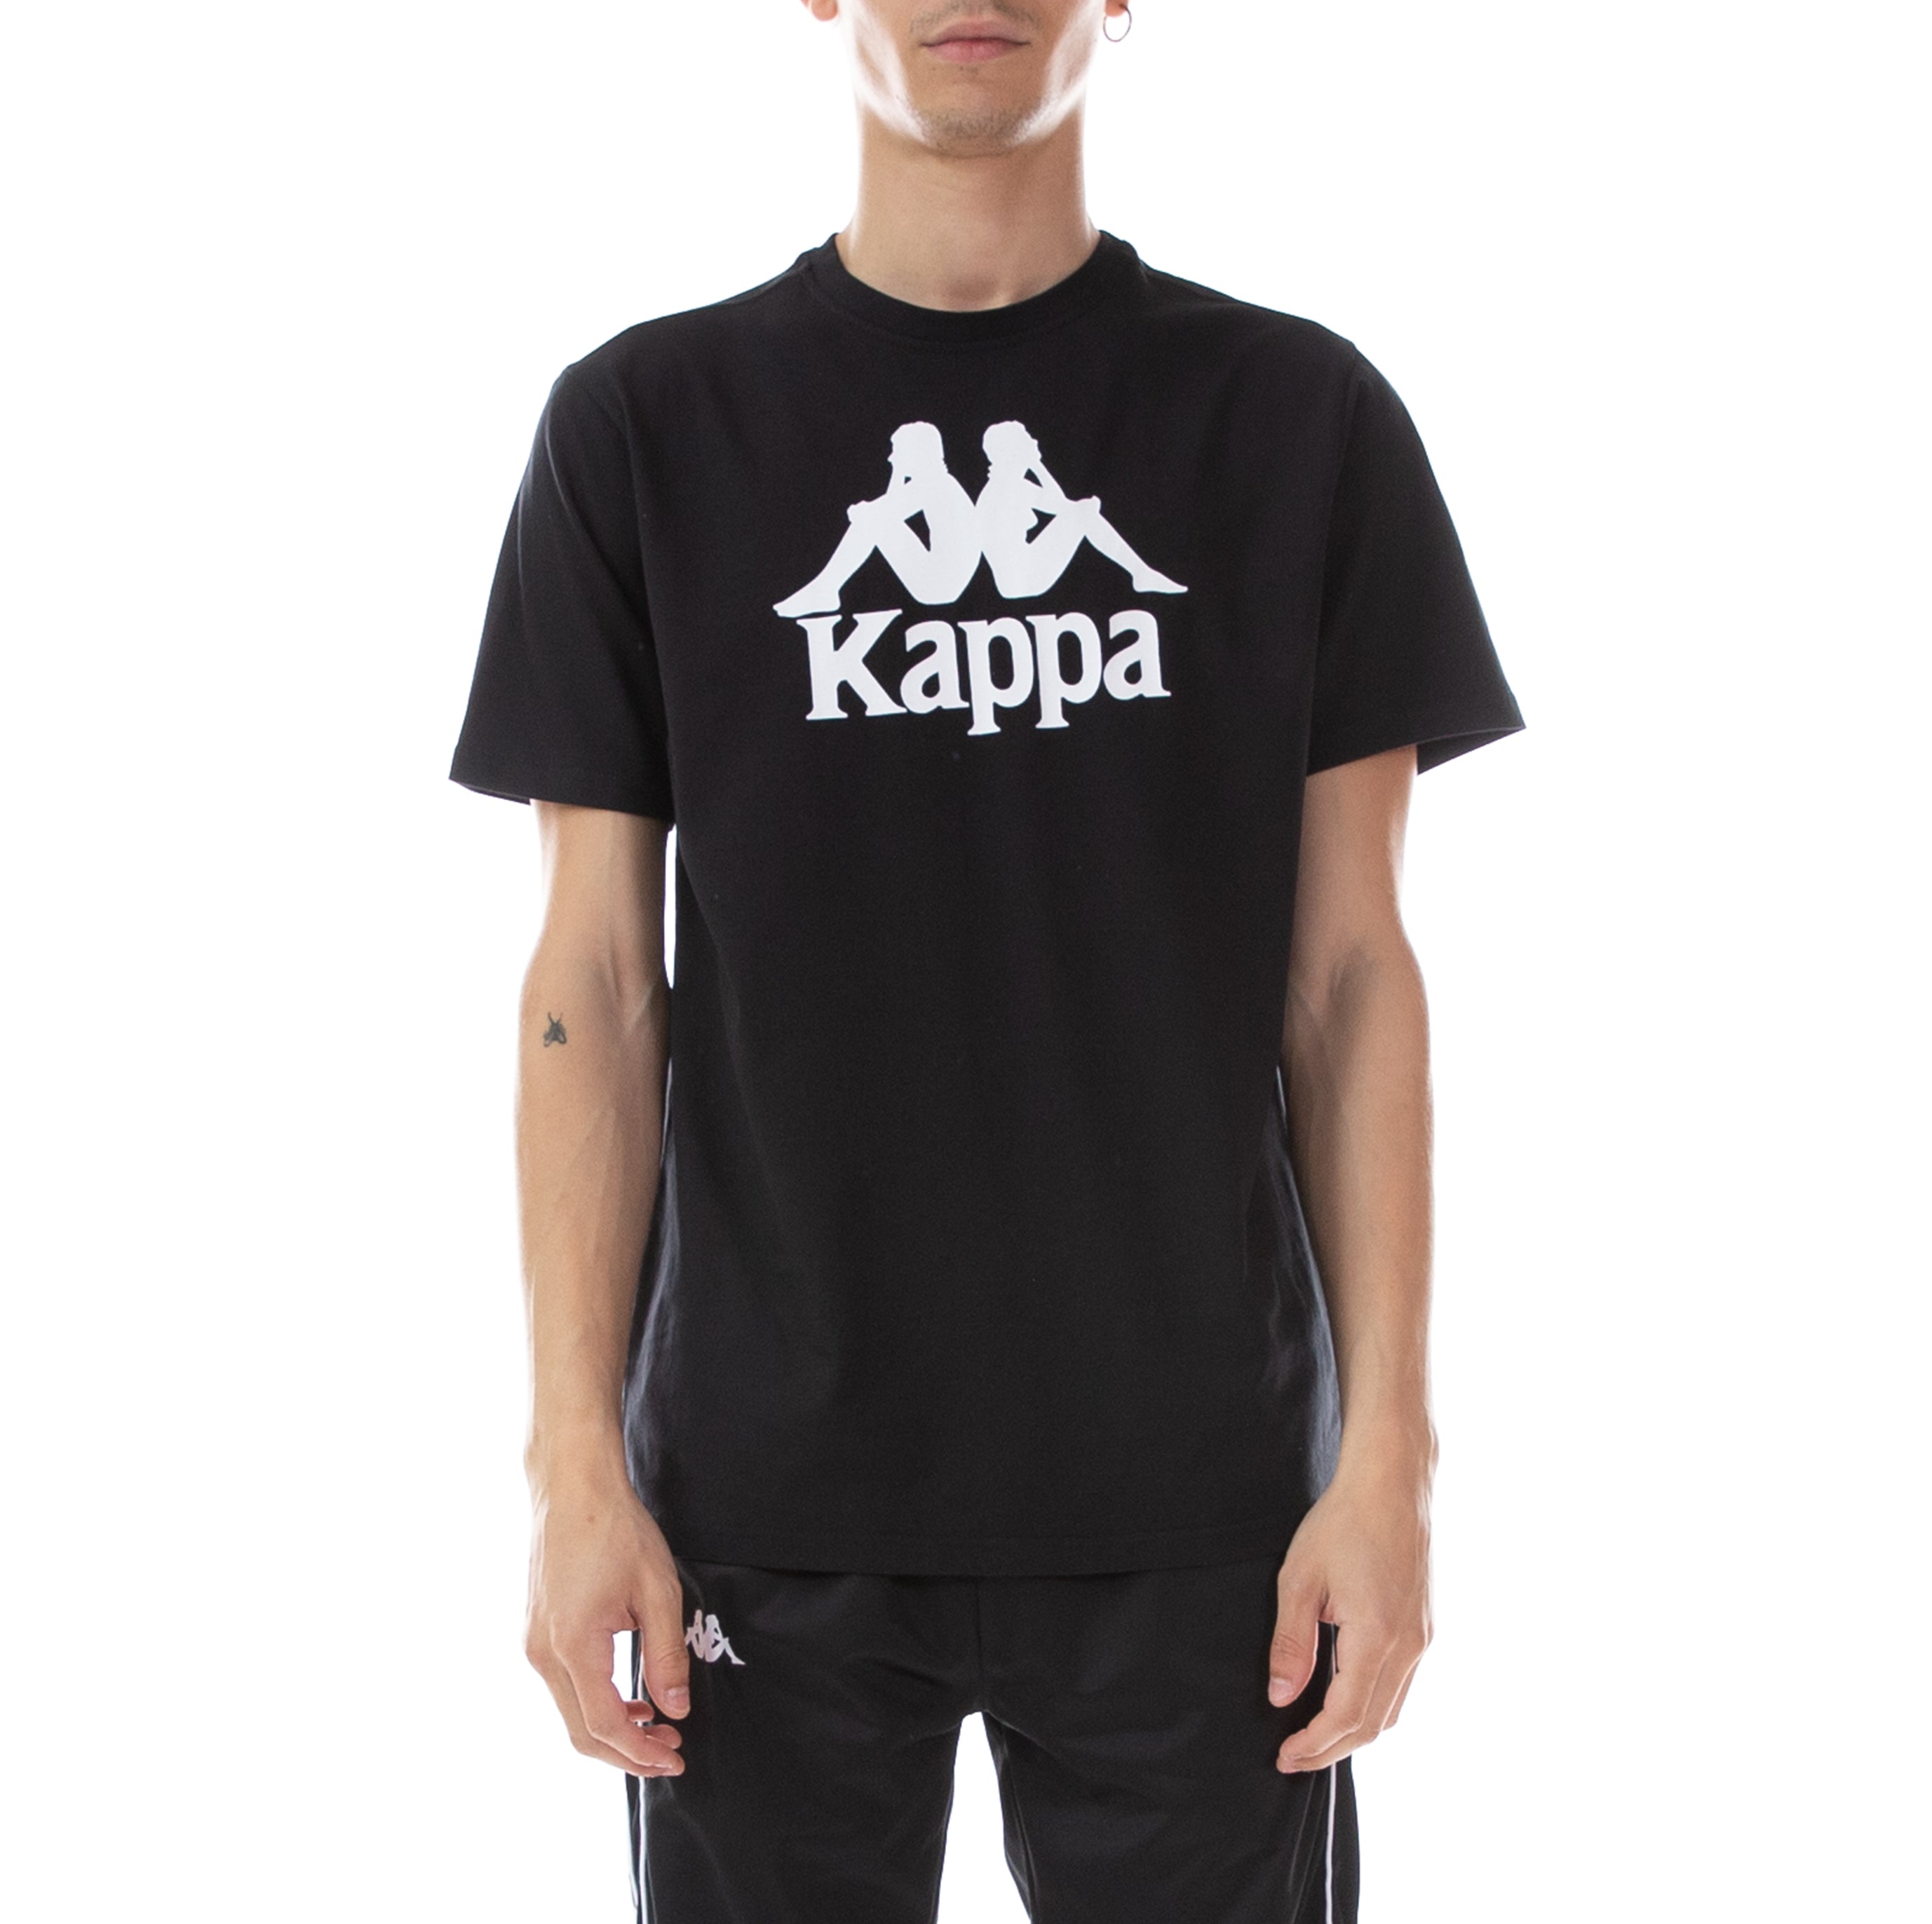 Authentic Estessi T-Shirt - Black White Kappa USA